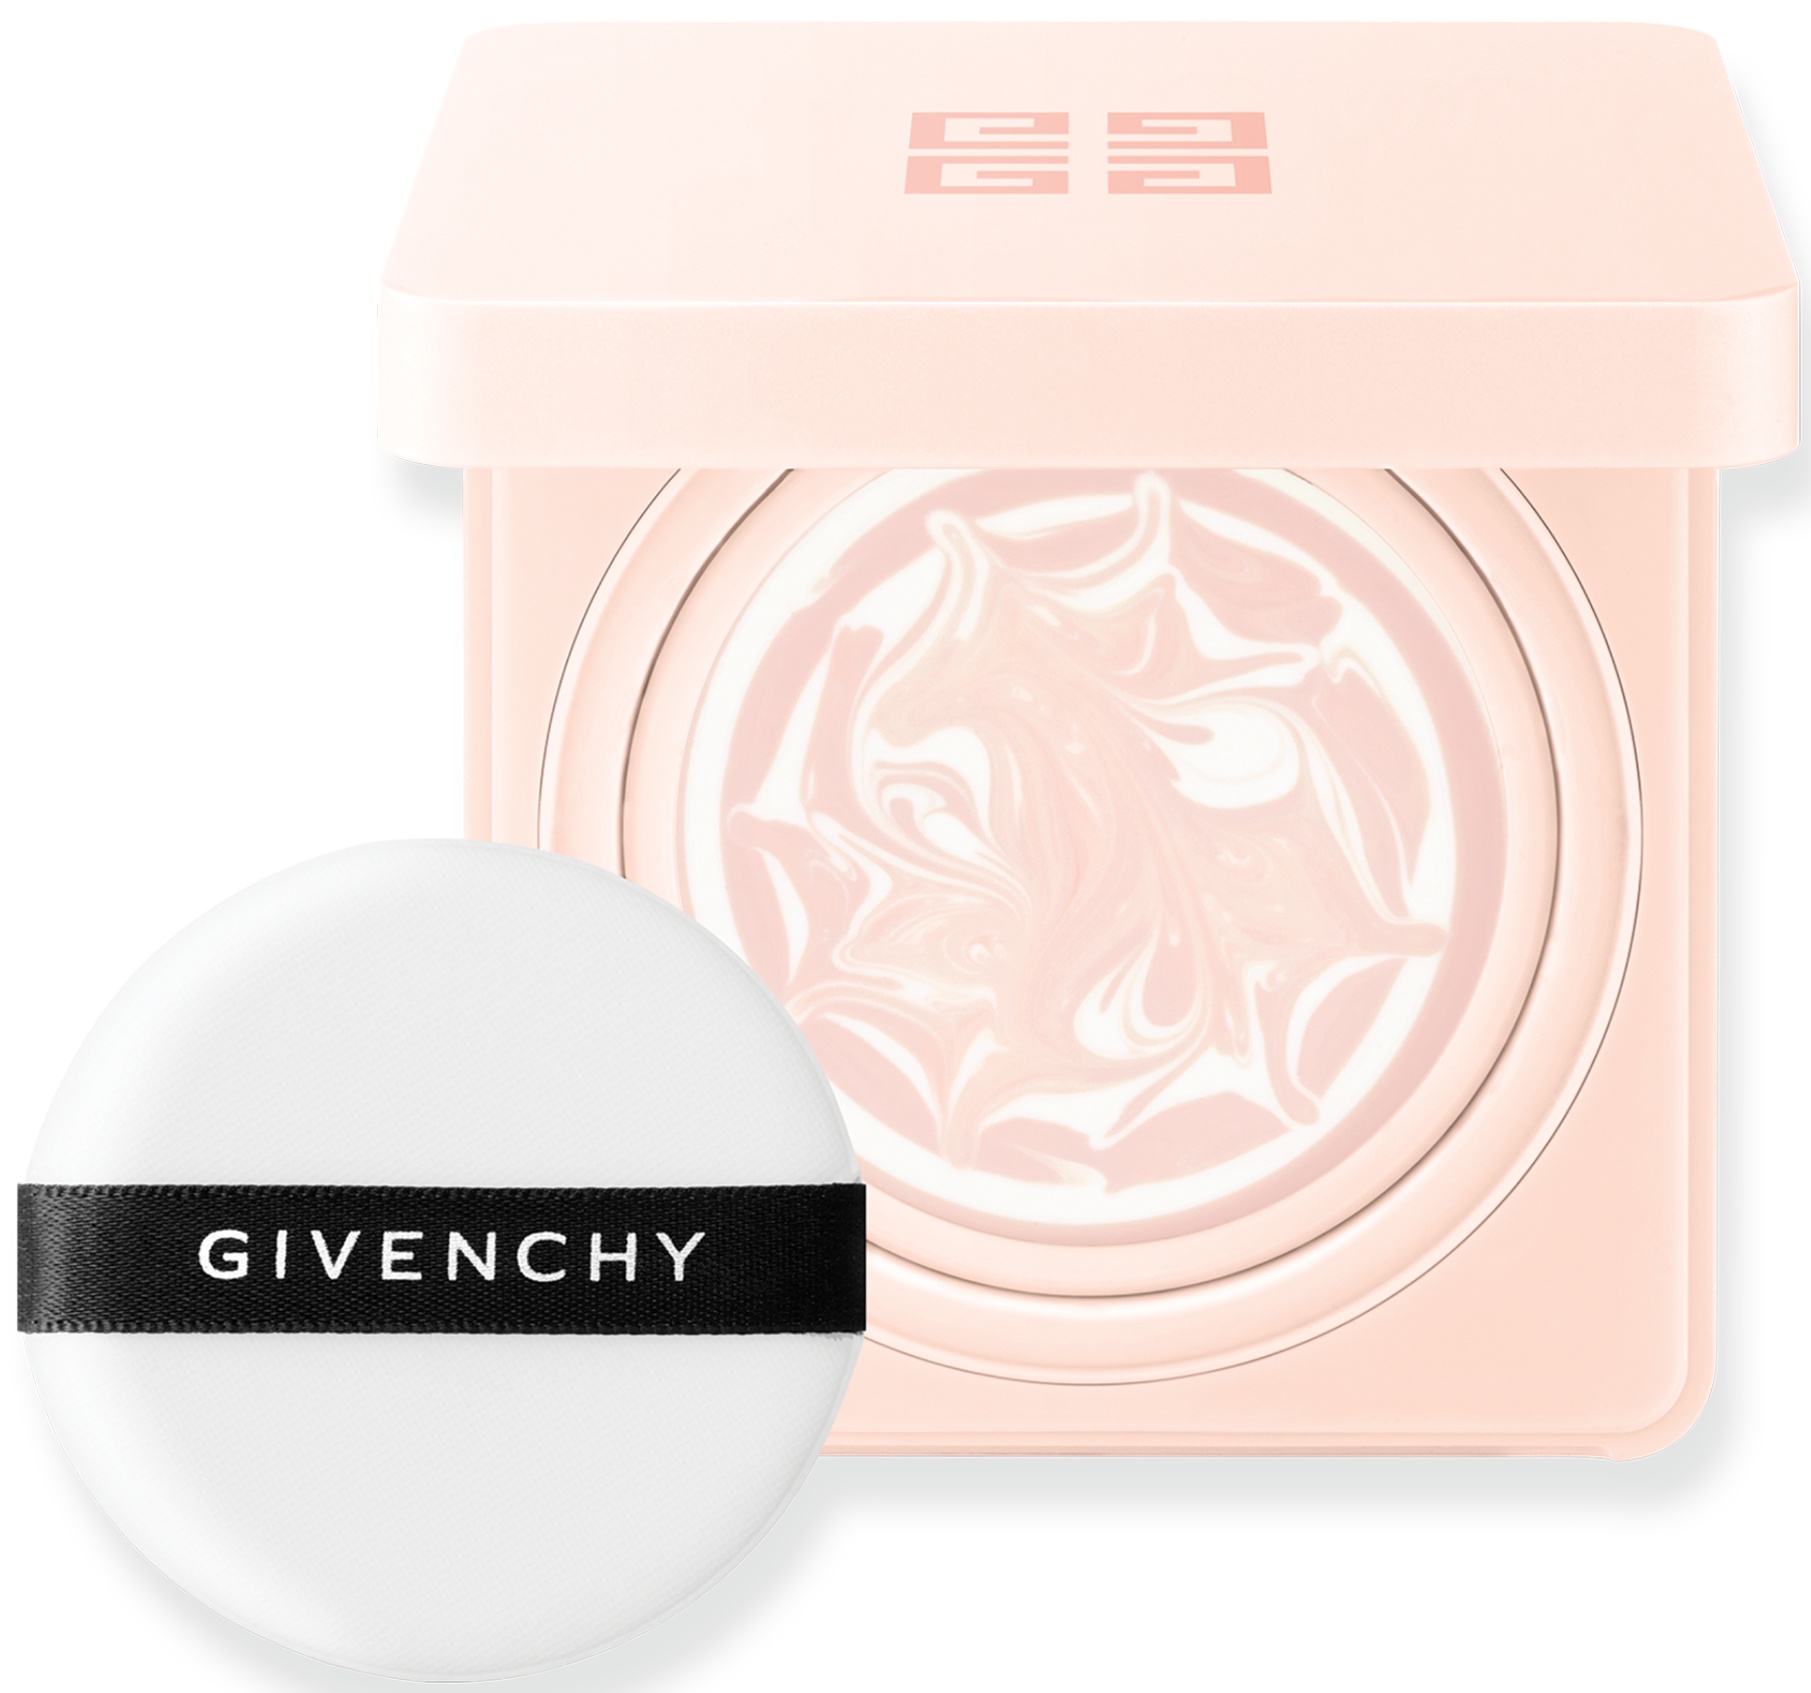 Givenchy L'Intemporel Blossom Fresh-Face Compact Day Cream SPF 15 PA+ Anti-Fatigue